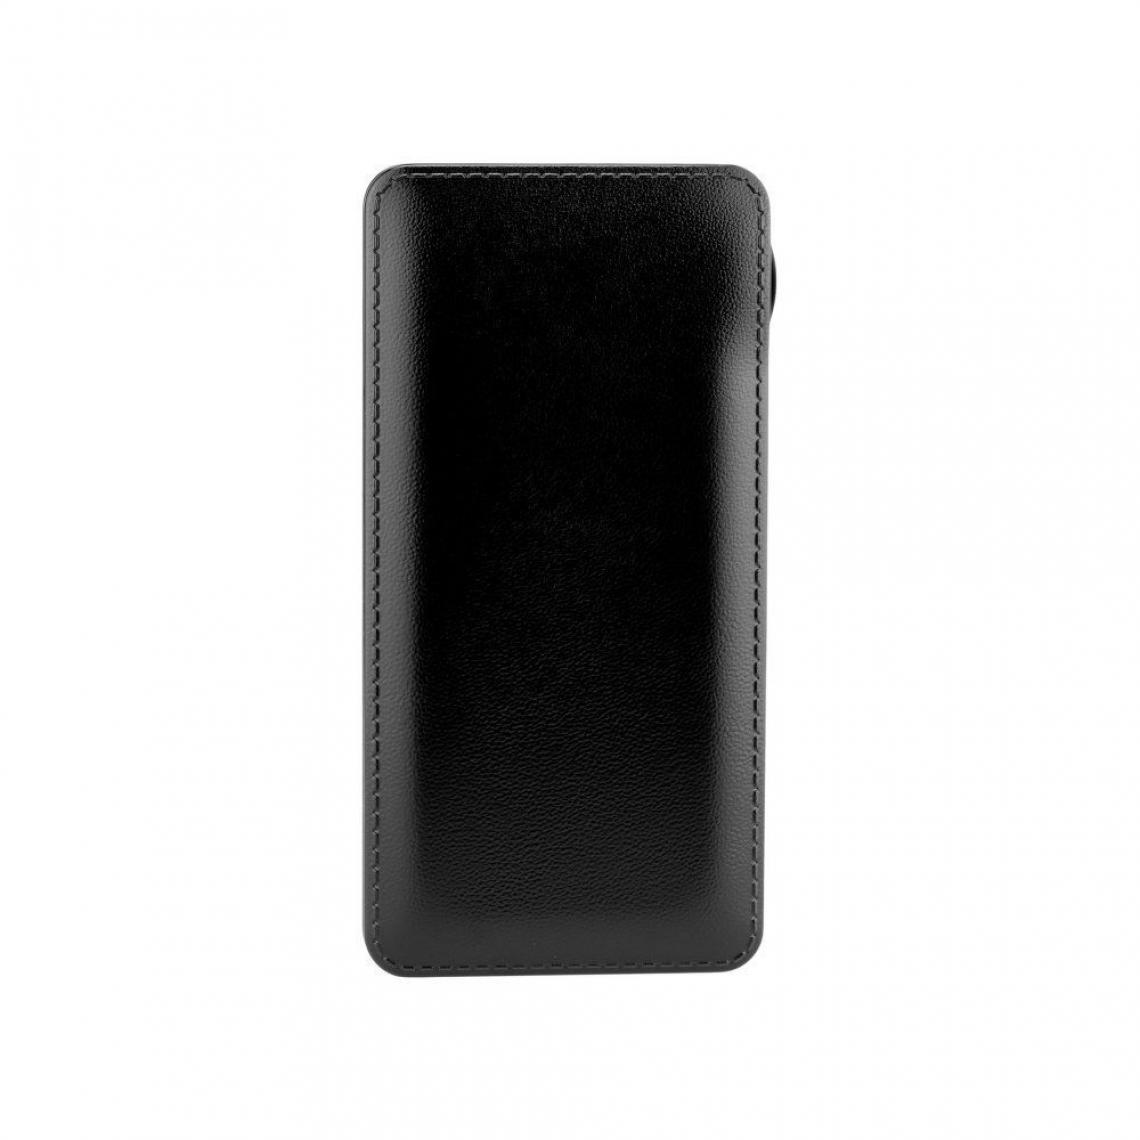 Ozzzo - Chargeur batterie externe 10000mAh powerbank ozzzo noir pour Teclast M18 - Autres accessoires smartphone